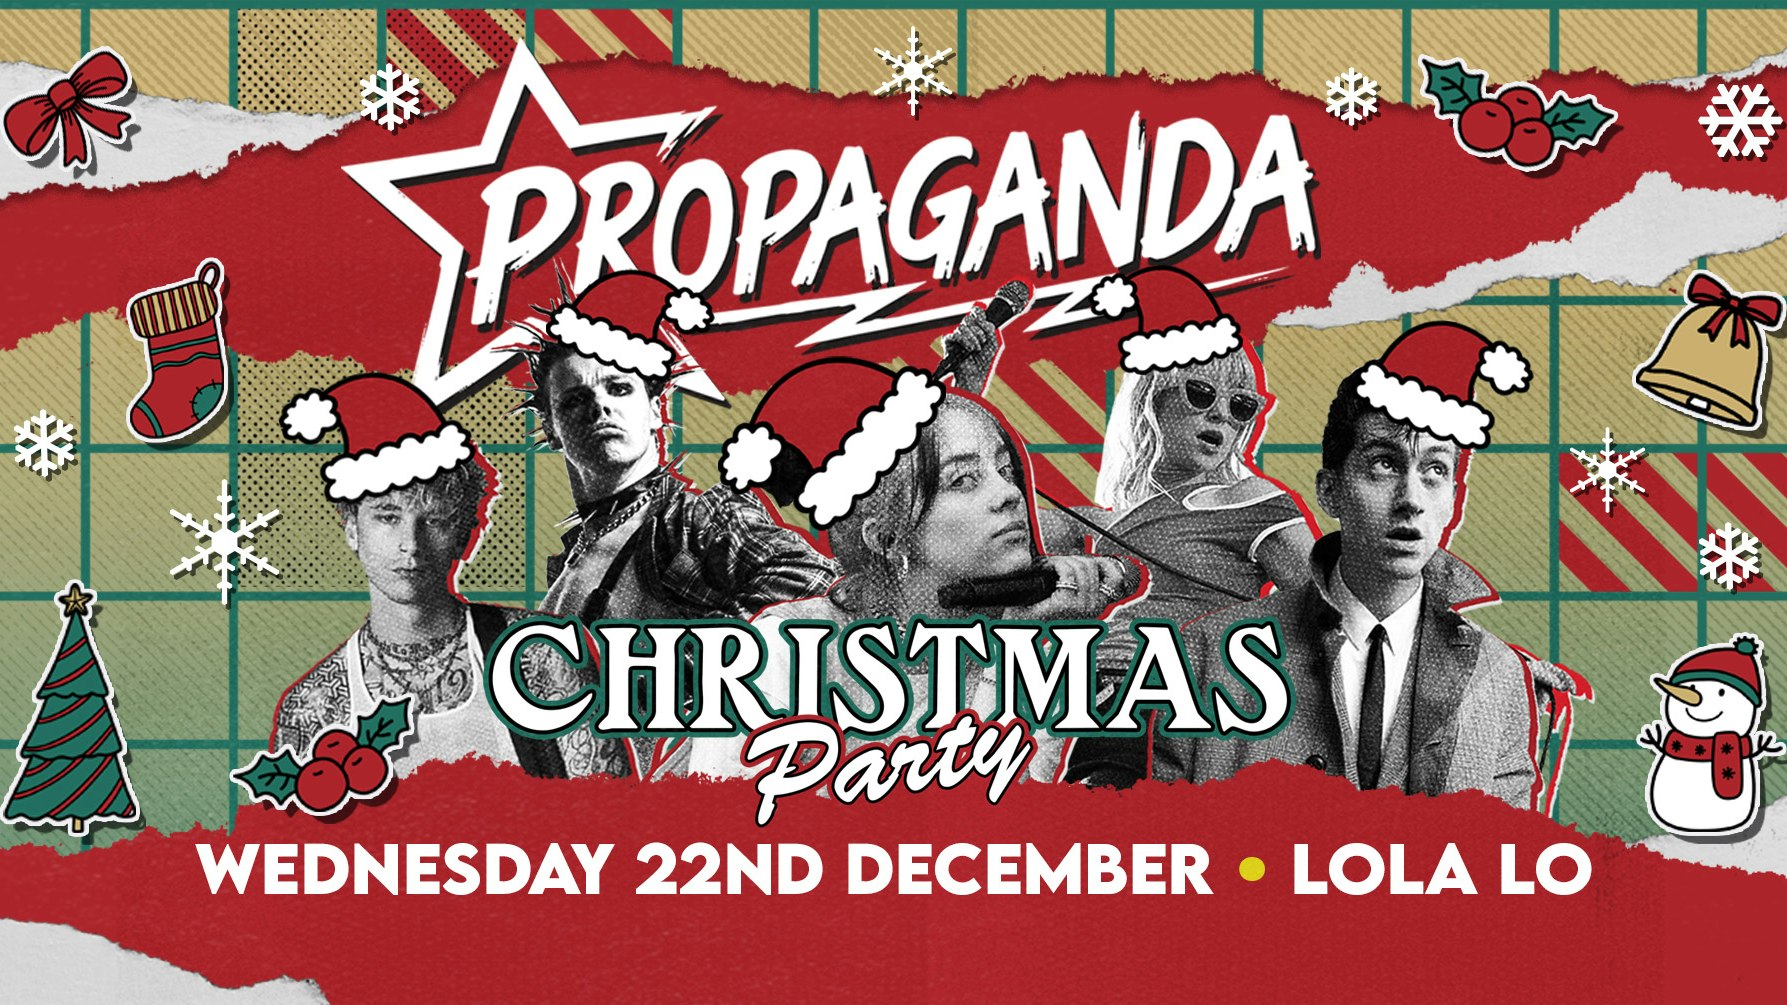 Propaganda Cambridge – Christmas Party!